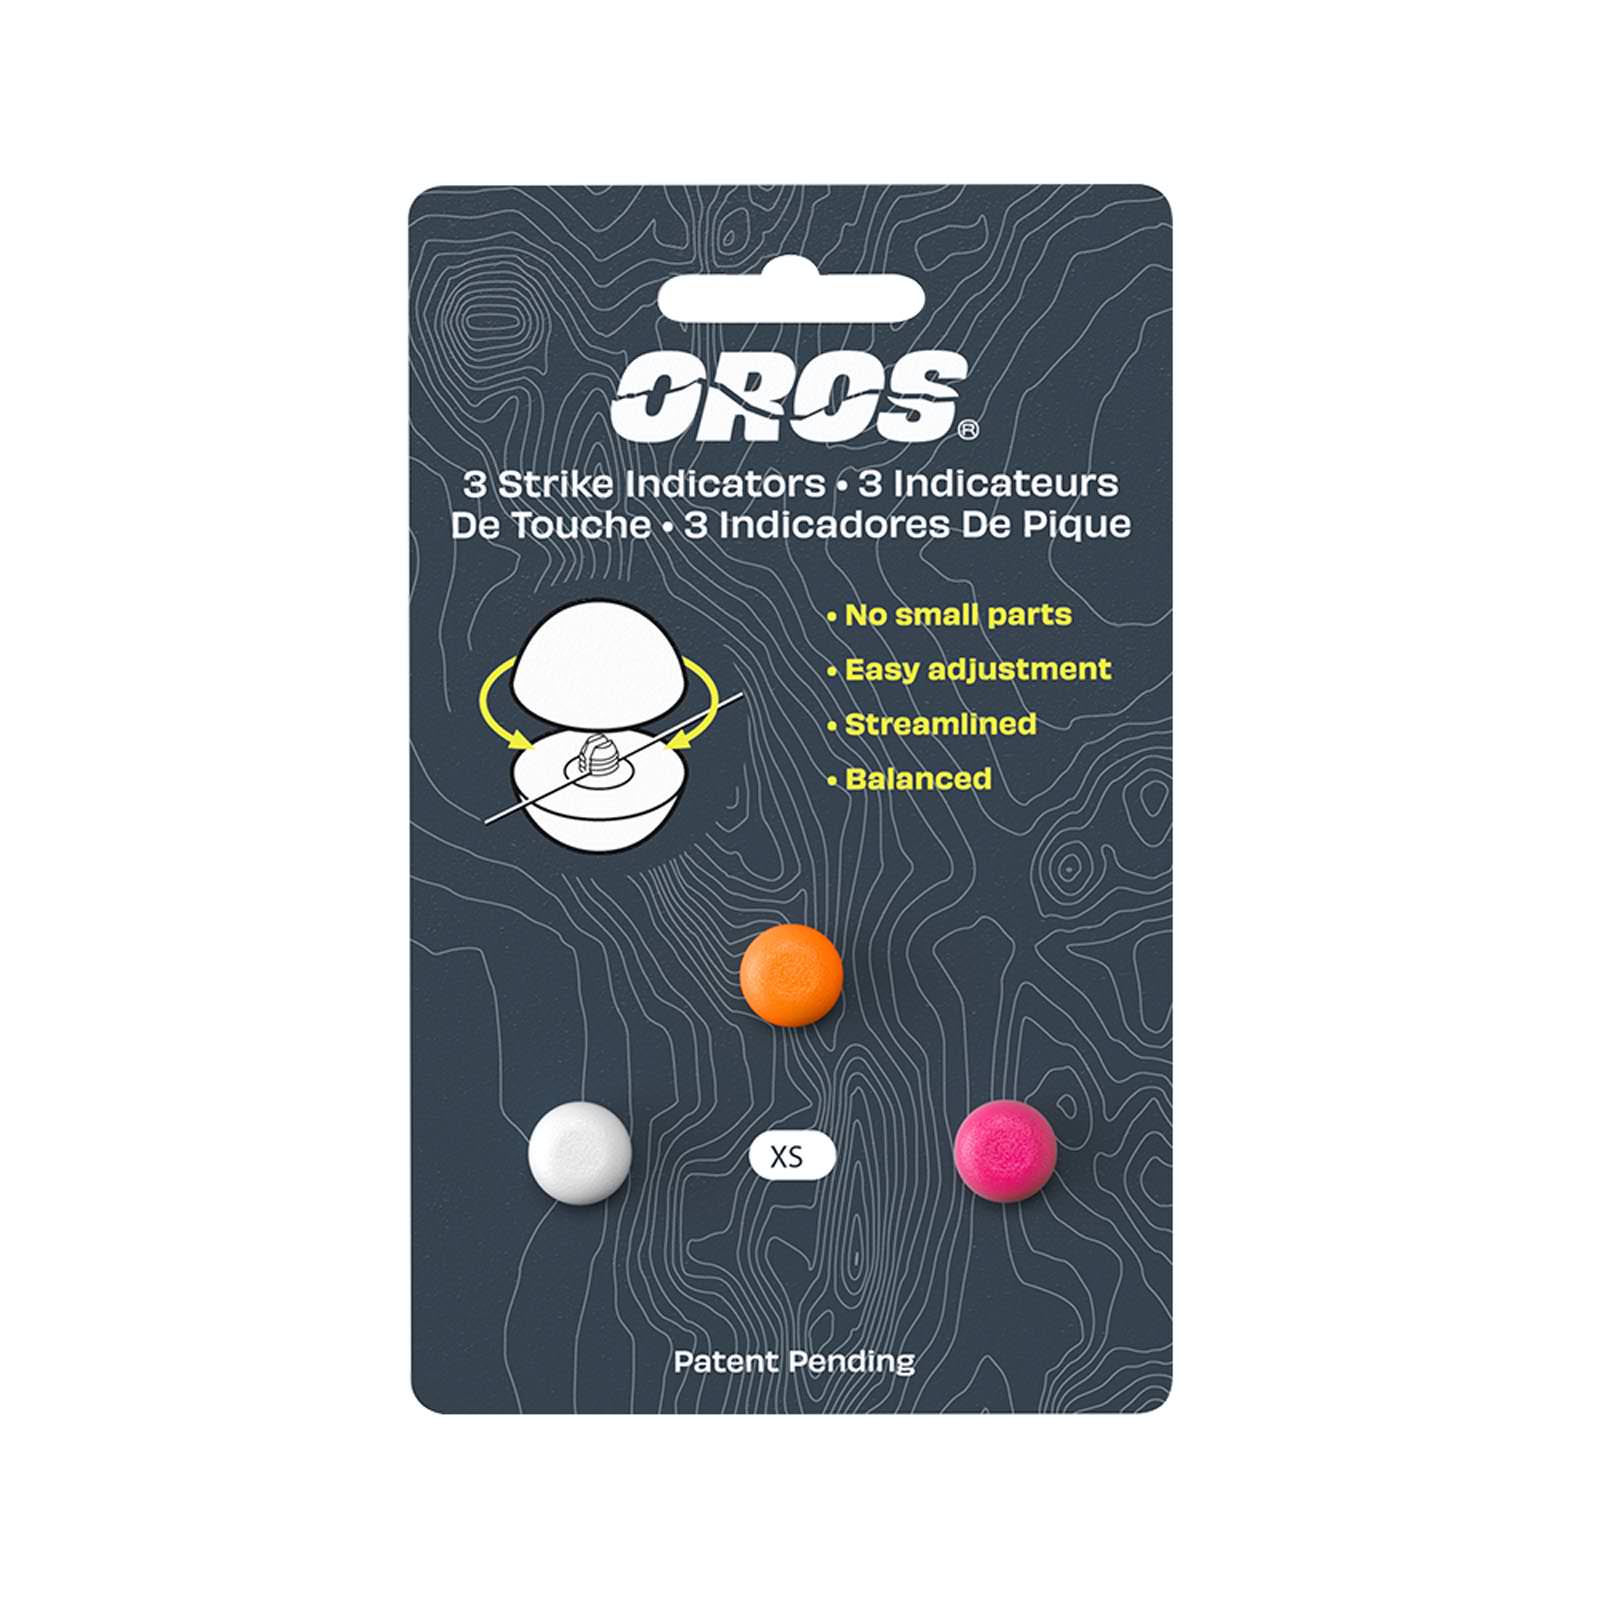 Oros Biodegradable Indicator 3-Pack